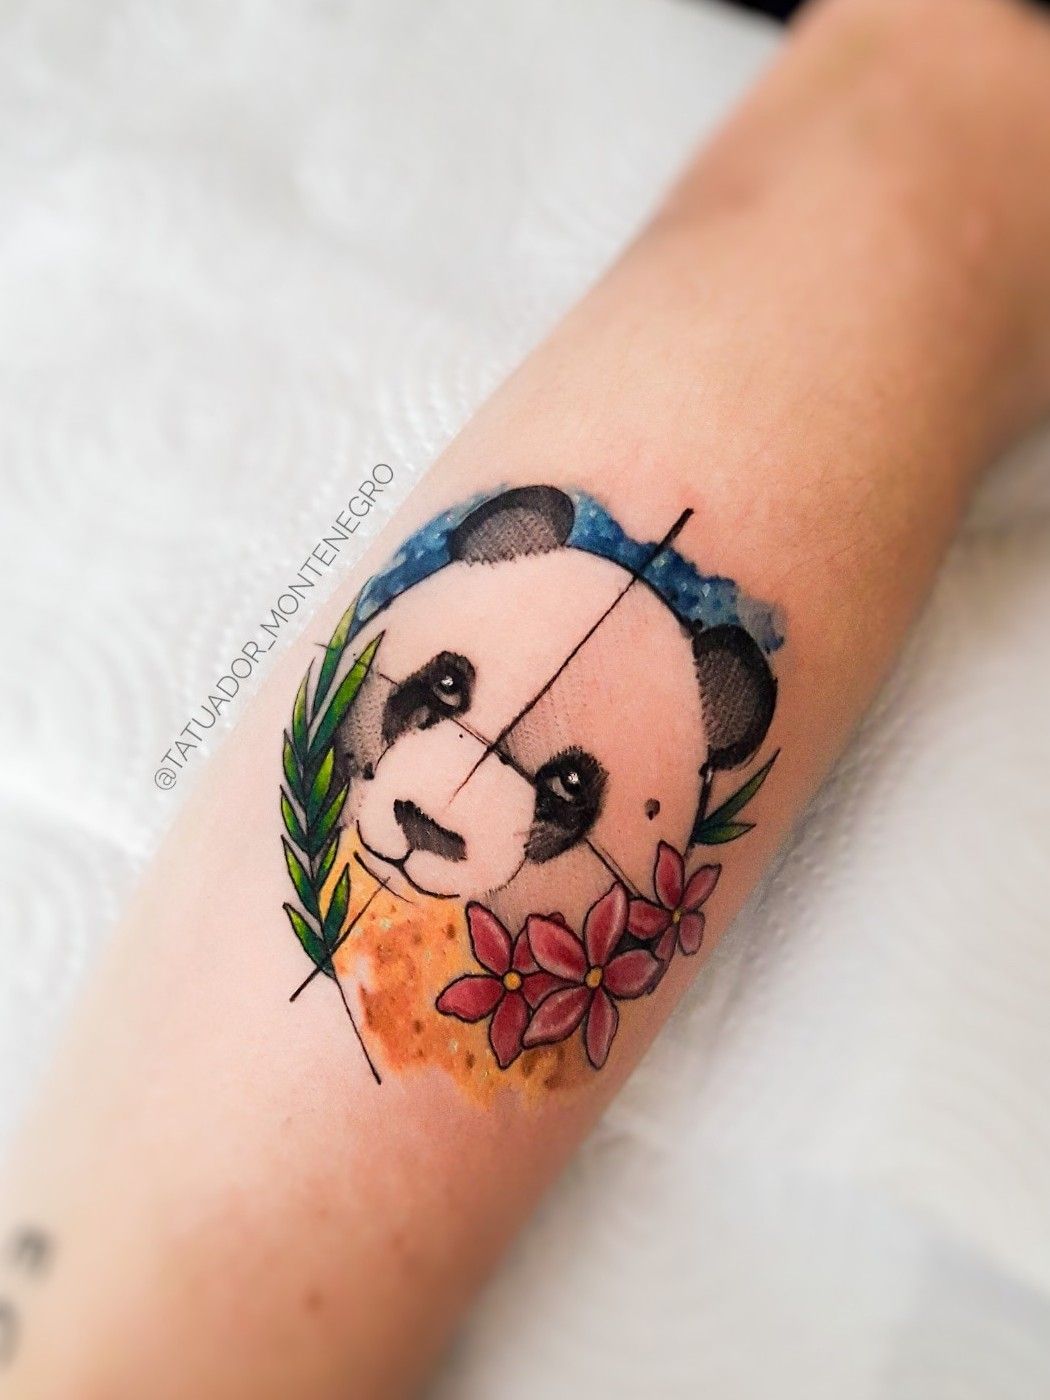 Pin by Pinner on Tattoos  Panda tattoo Leg tattoos Body art tattoos